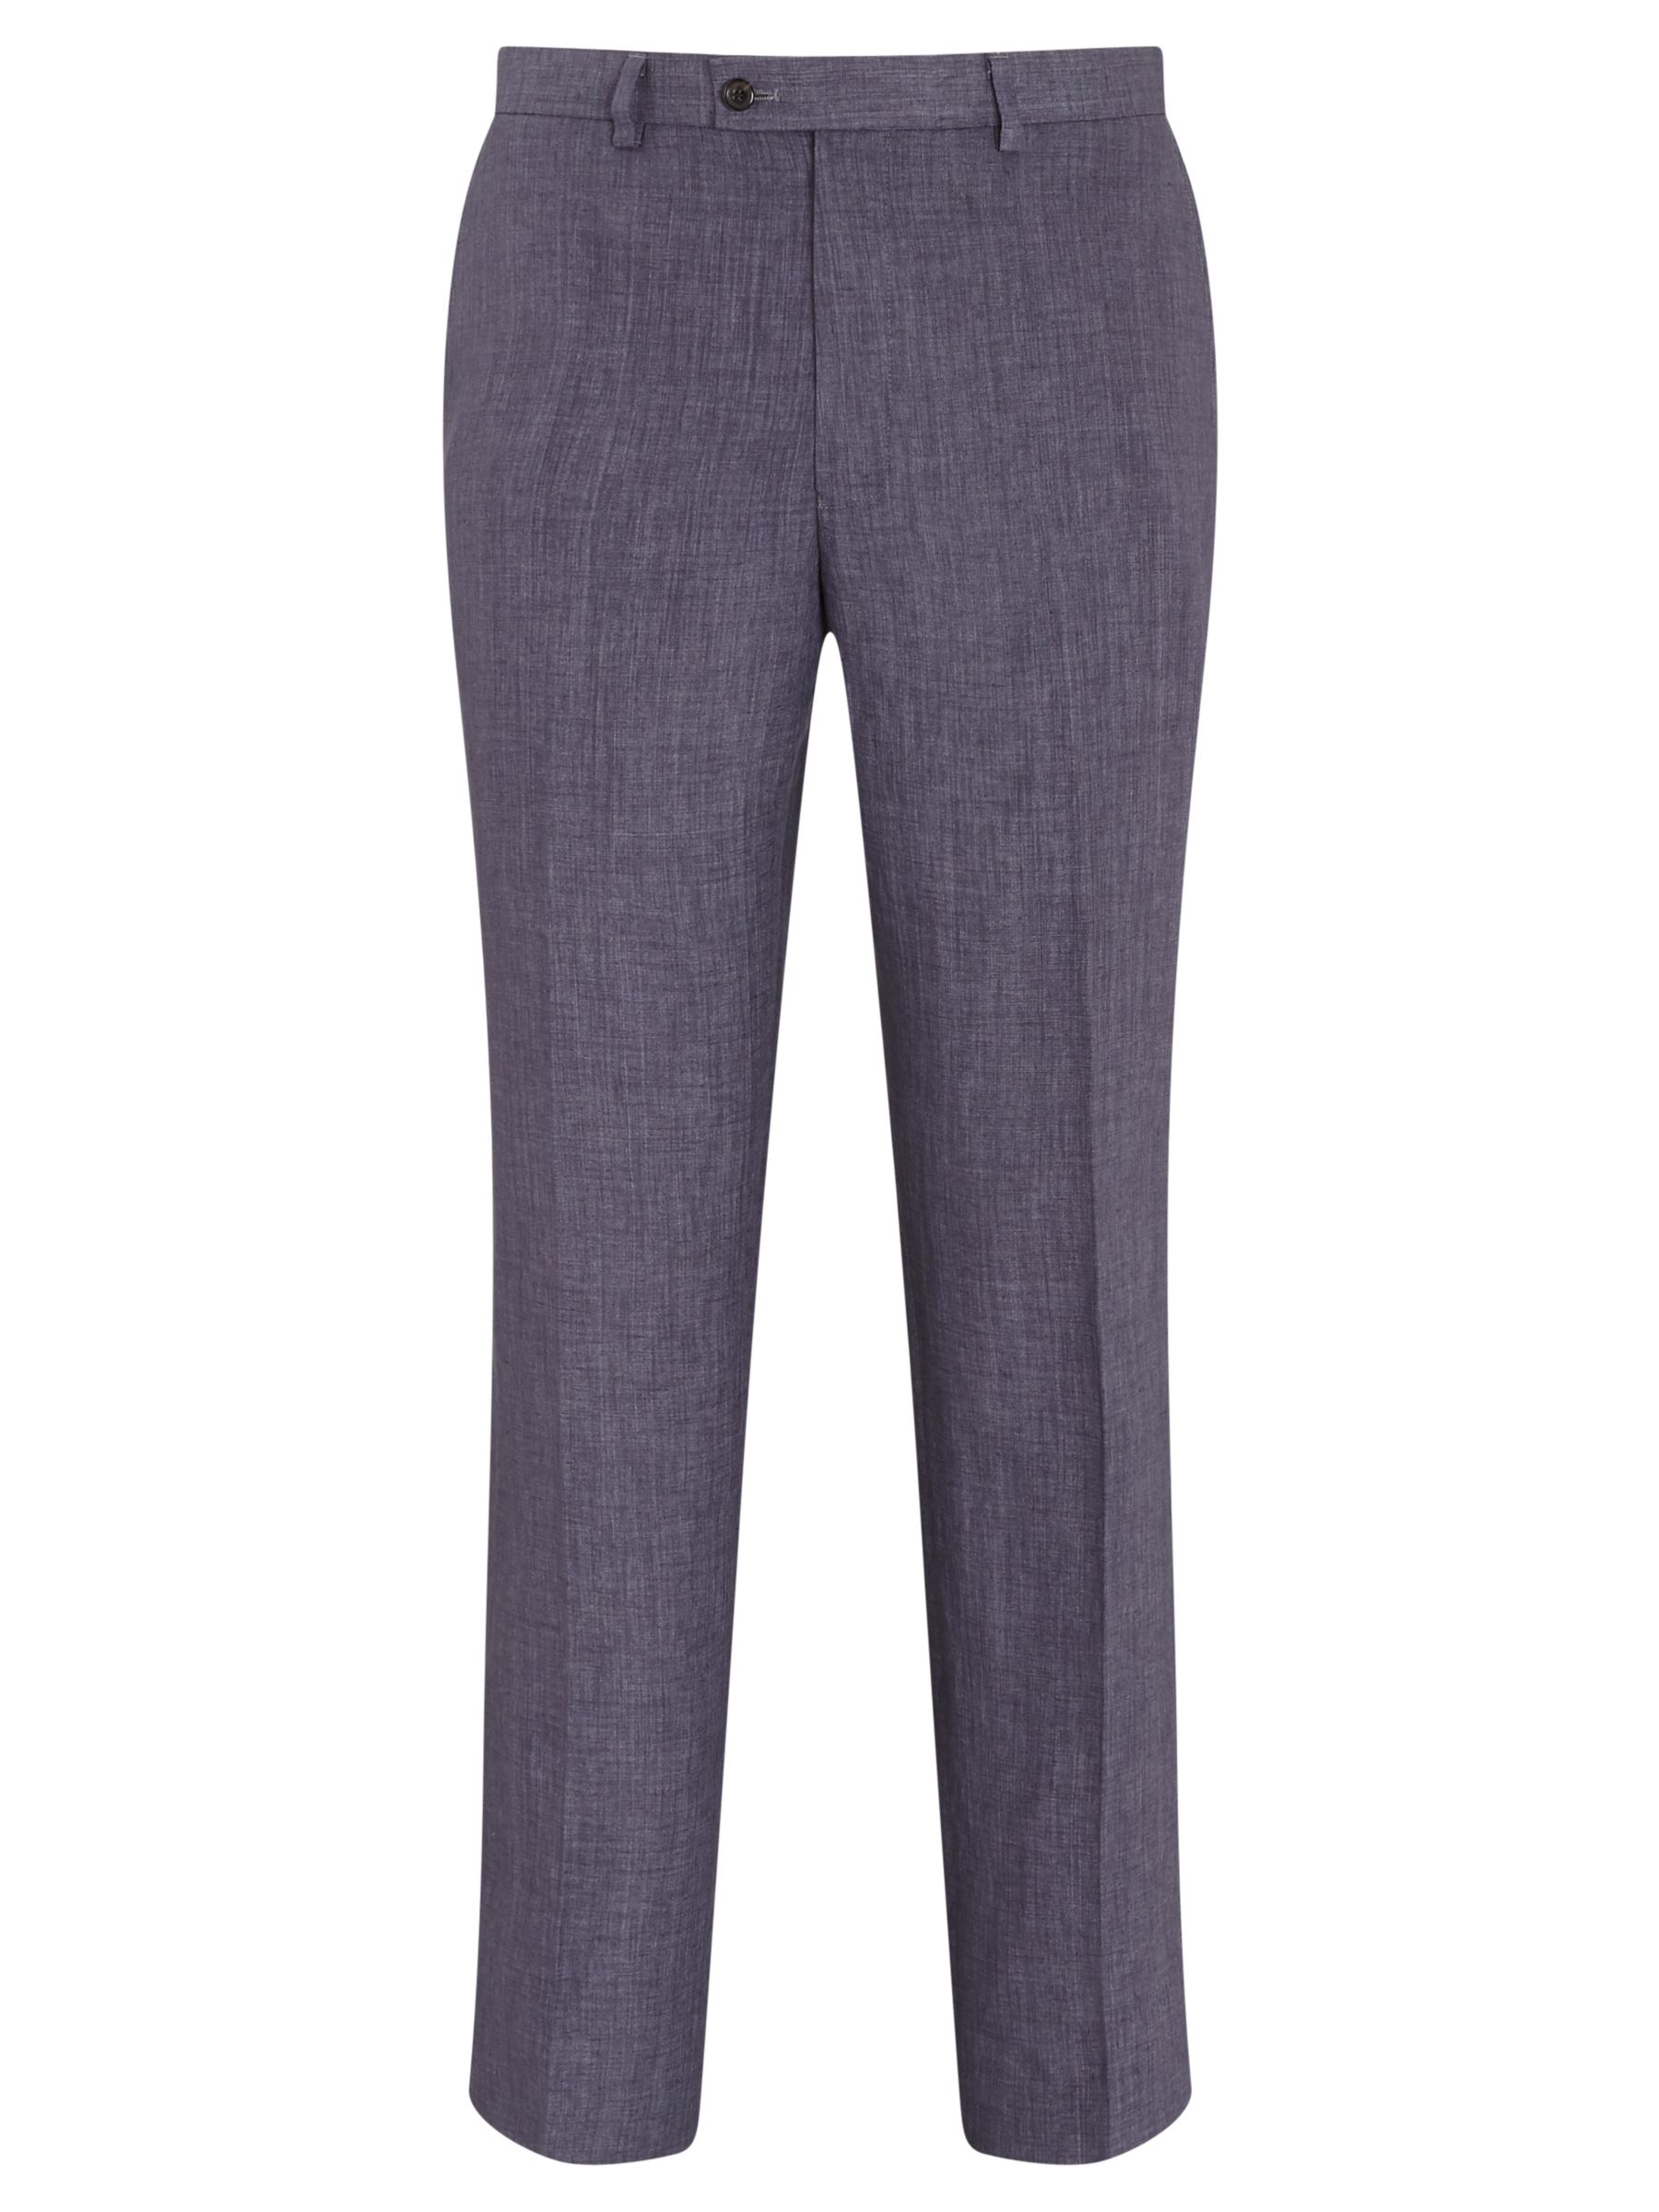 John Lewis & Partners Linen Regular Fit Suit Trousers, Slate, 34L